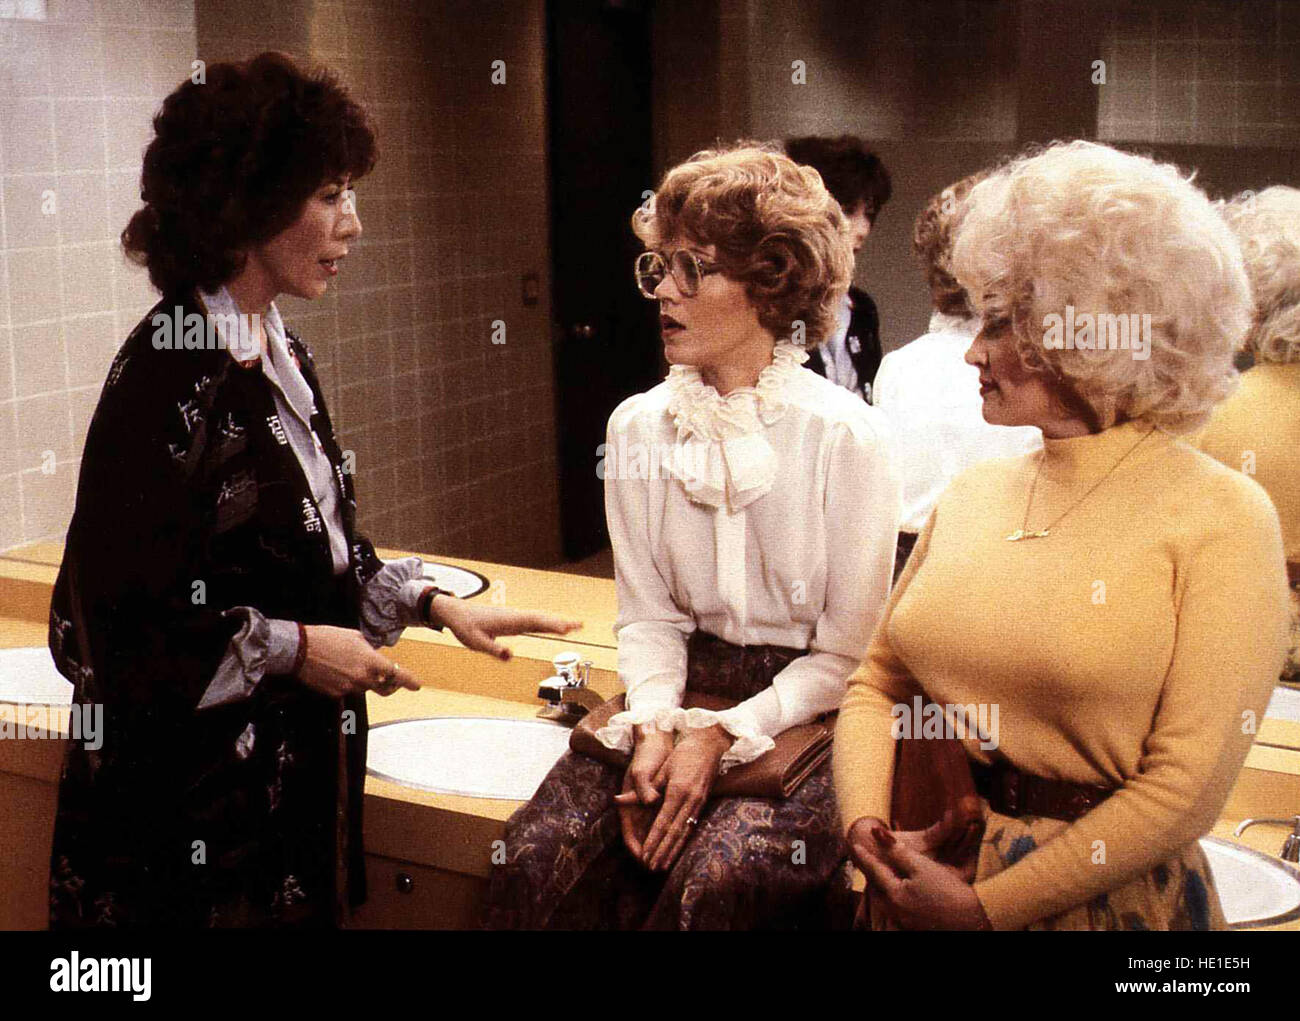 Warum eigentlich... bringen wir den Chef nicht um? aka. Nine to Five, USA 1980 Director: Colin Higgins Actors/Stars: Jane Fonda, Lily Tomlin, Dolly Parton Stock Photo